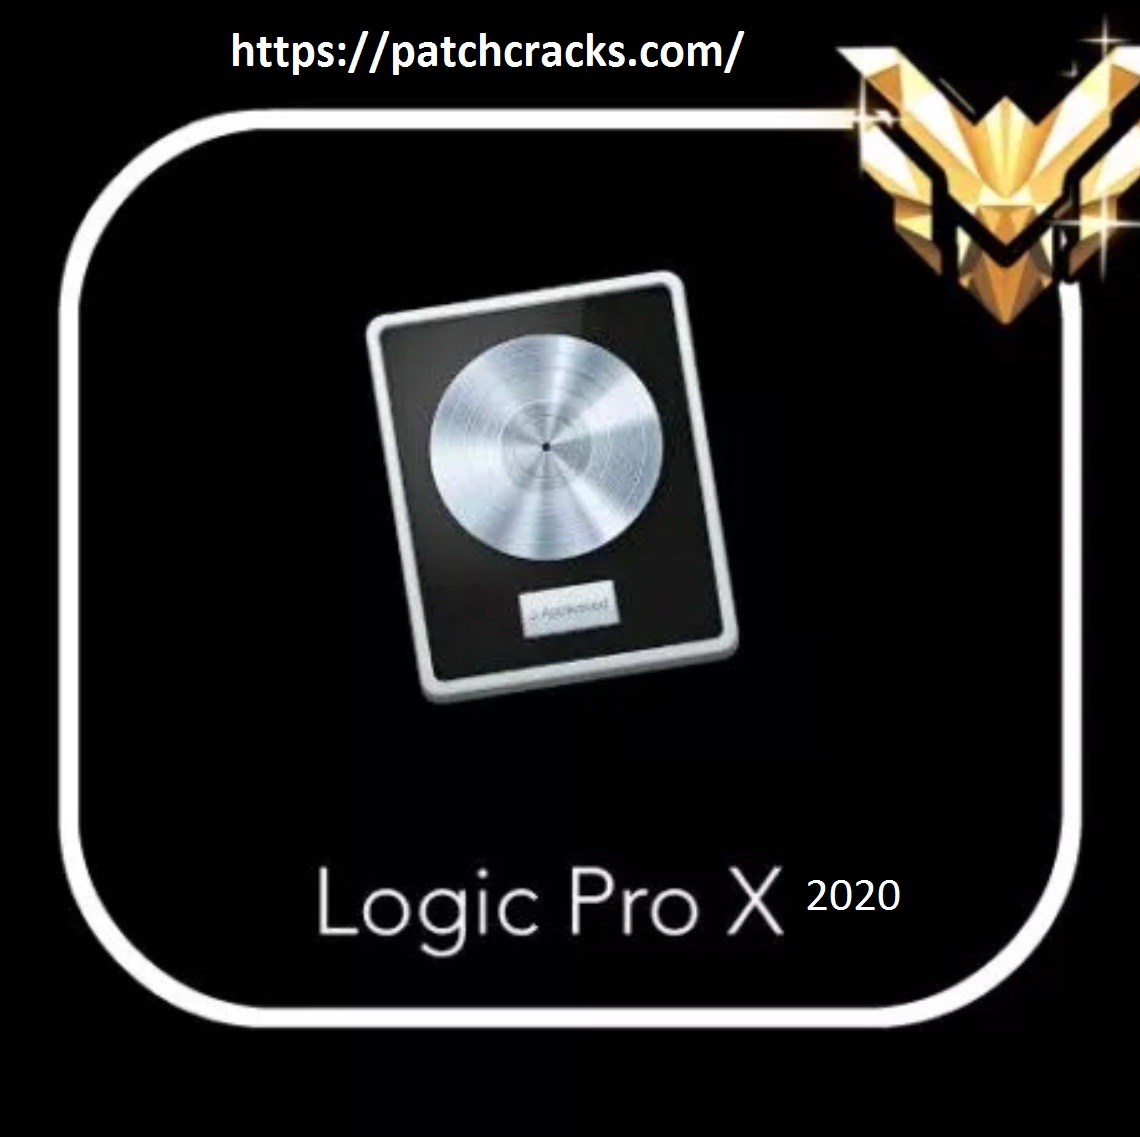 logic pro 9 free download for macintosh